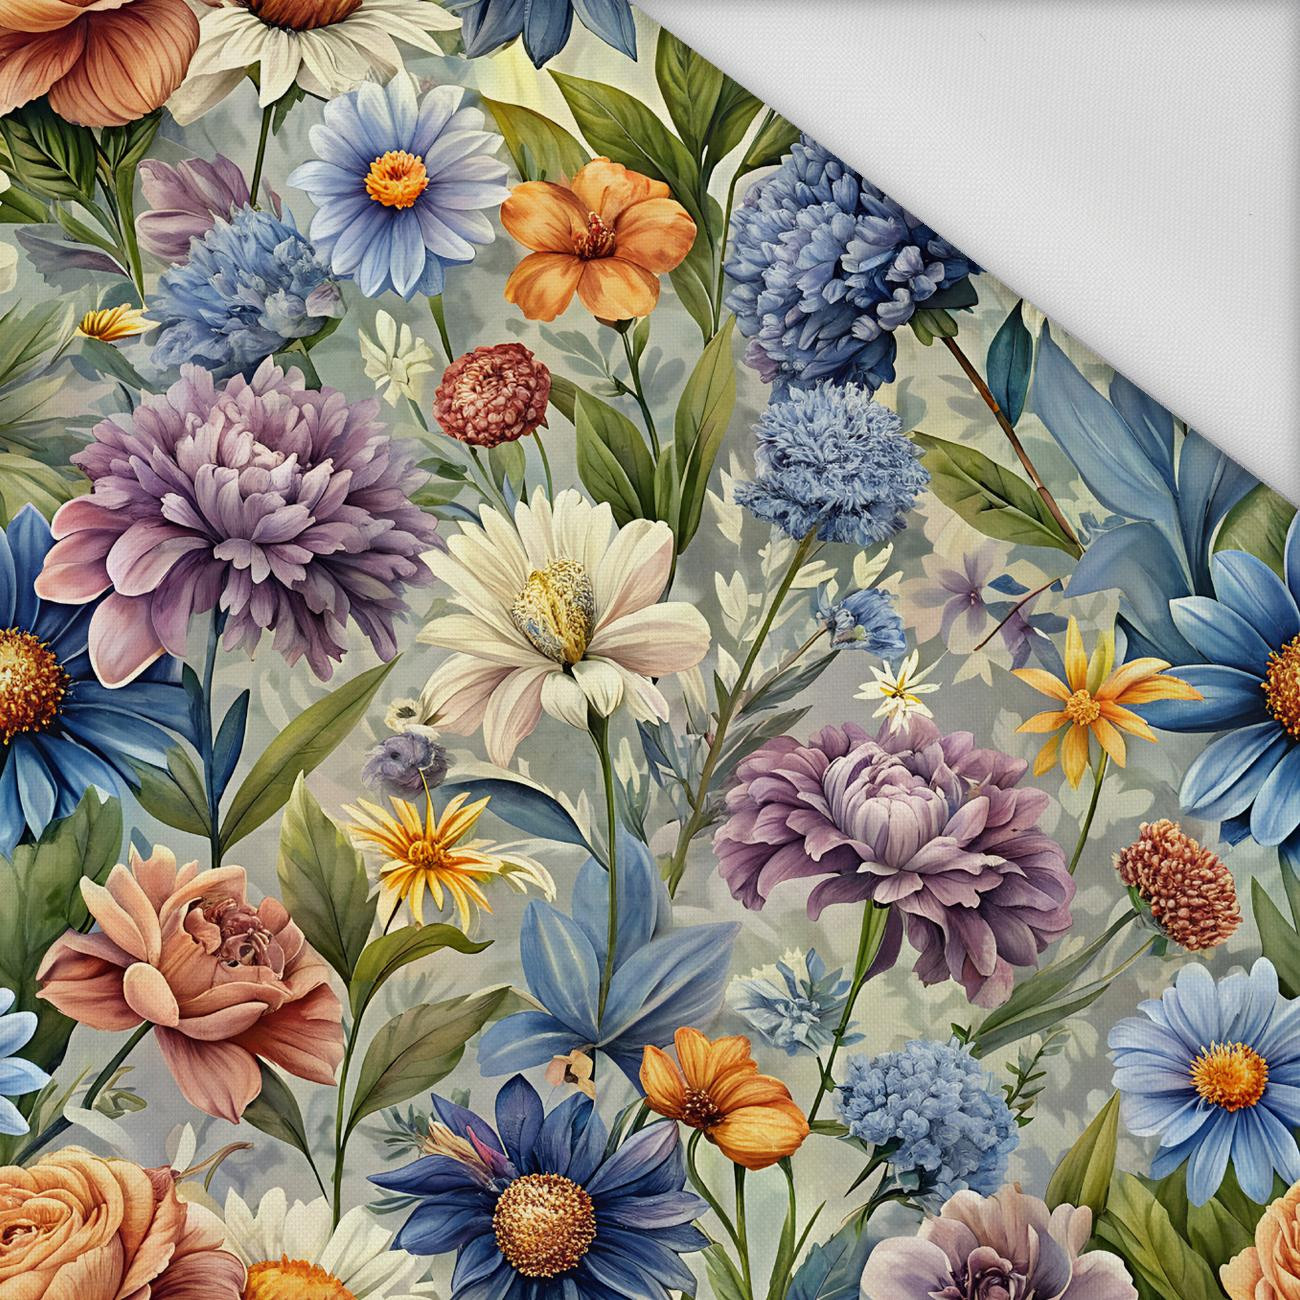 FLOWERS wz.15 - Waterproof woven fabric